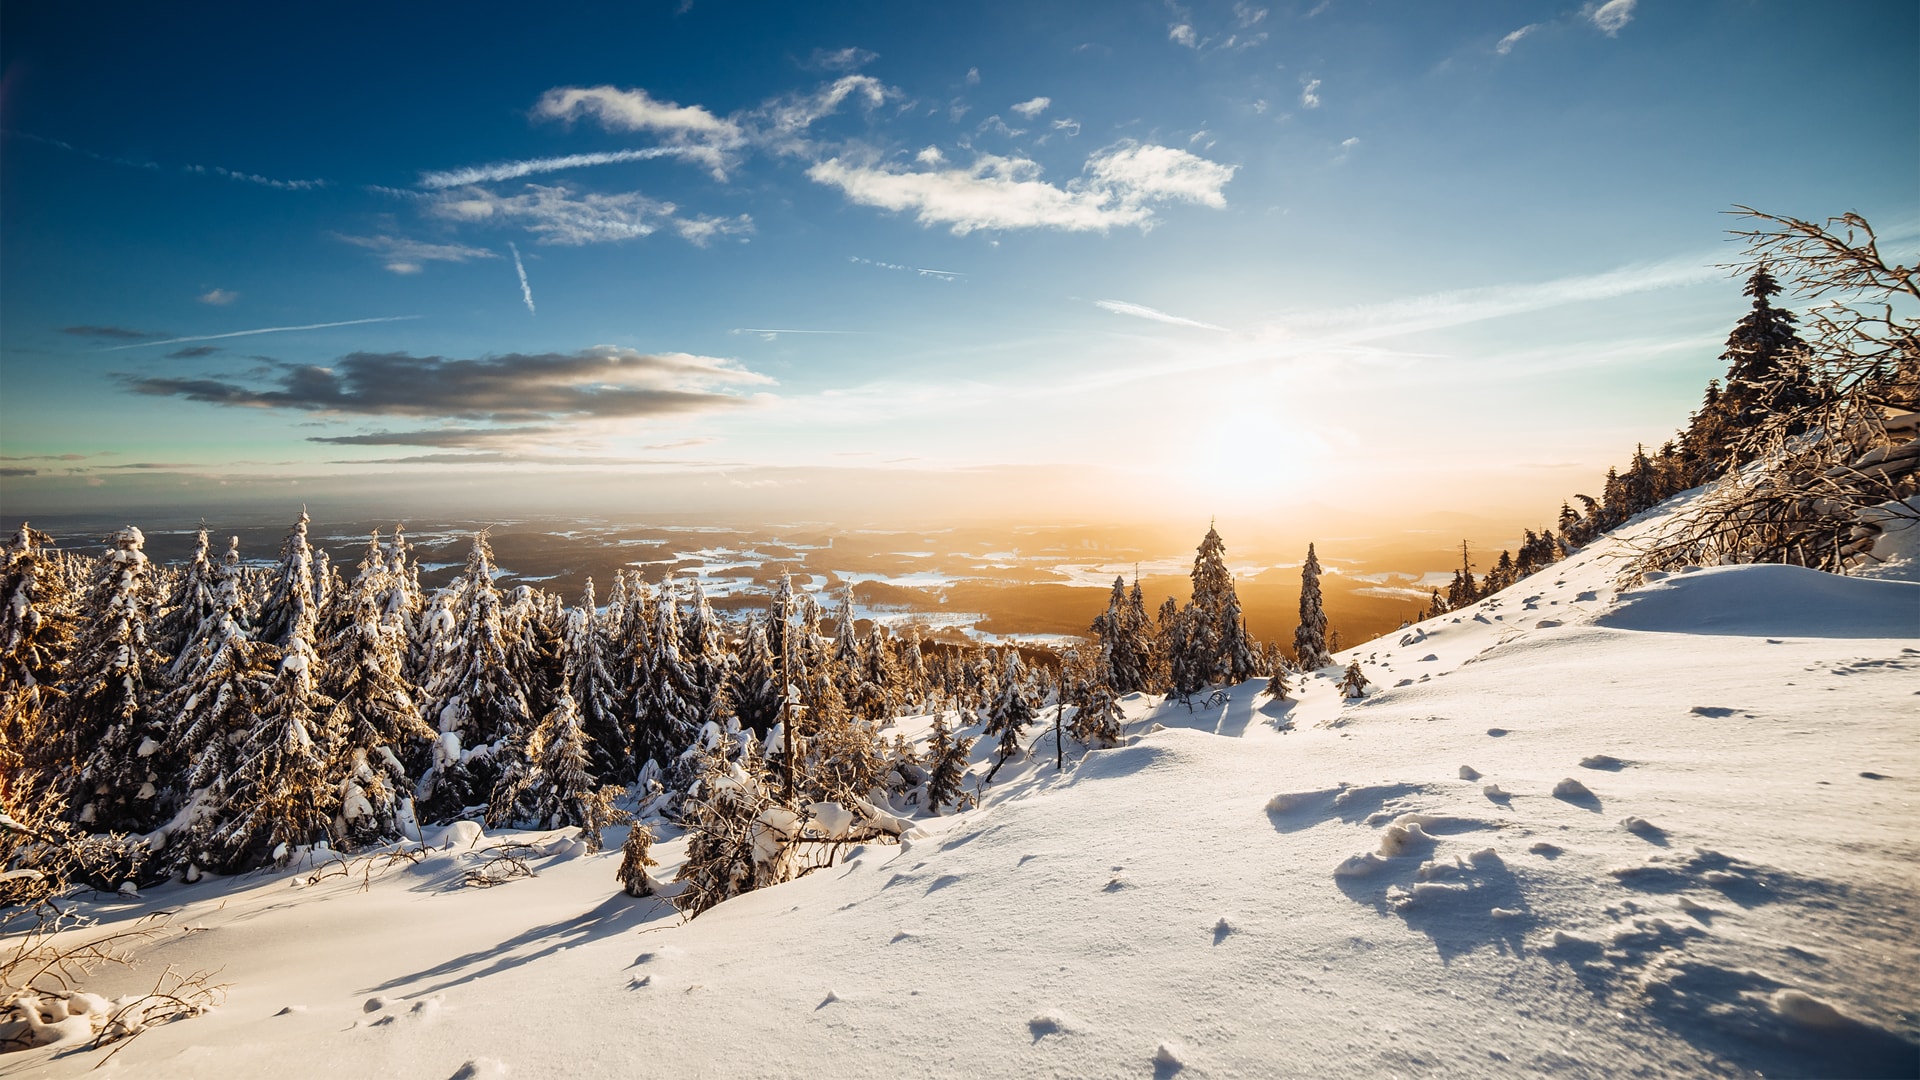 晴朗天空下粉妆玉砌的冬季山景